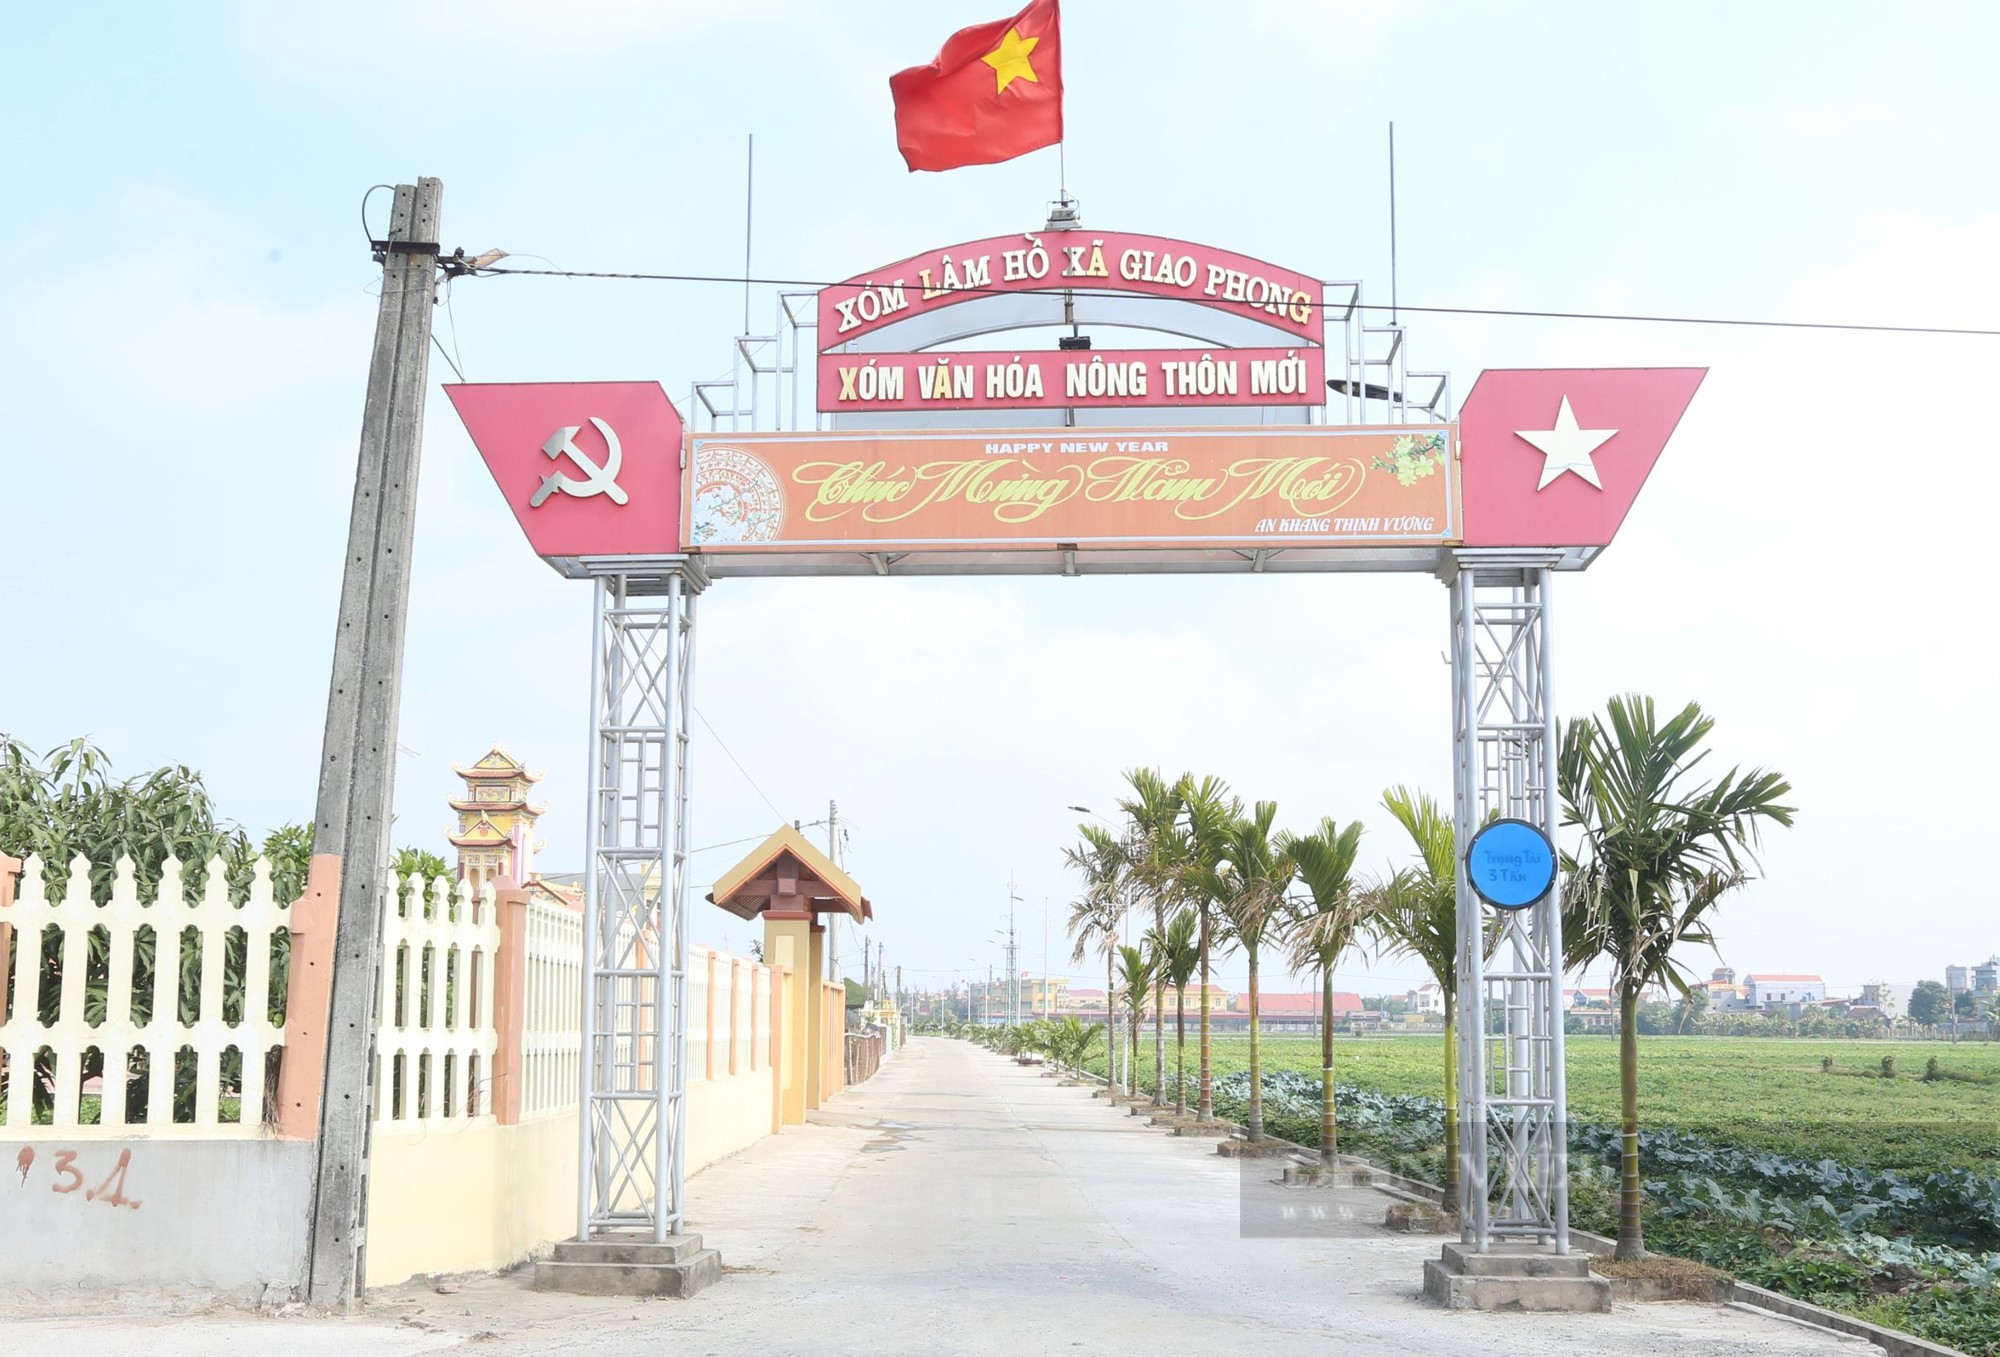 Về xã nông thôn mới kiểu mẫu đầu tiên tỉnh Nam Định, đường làng, ngõ xóm thông suốt, hai bên đường hàng cau xanh mướt - Ảnh 5.